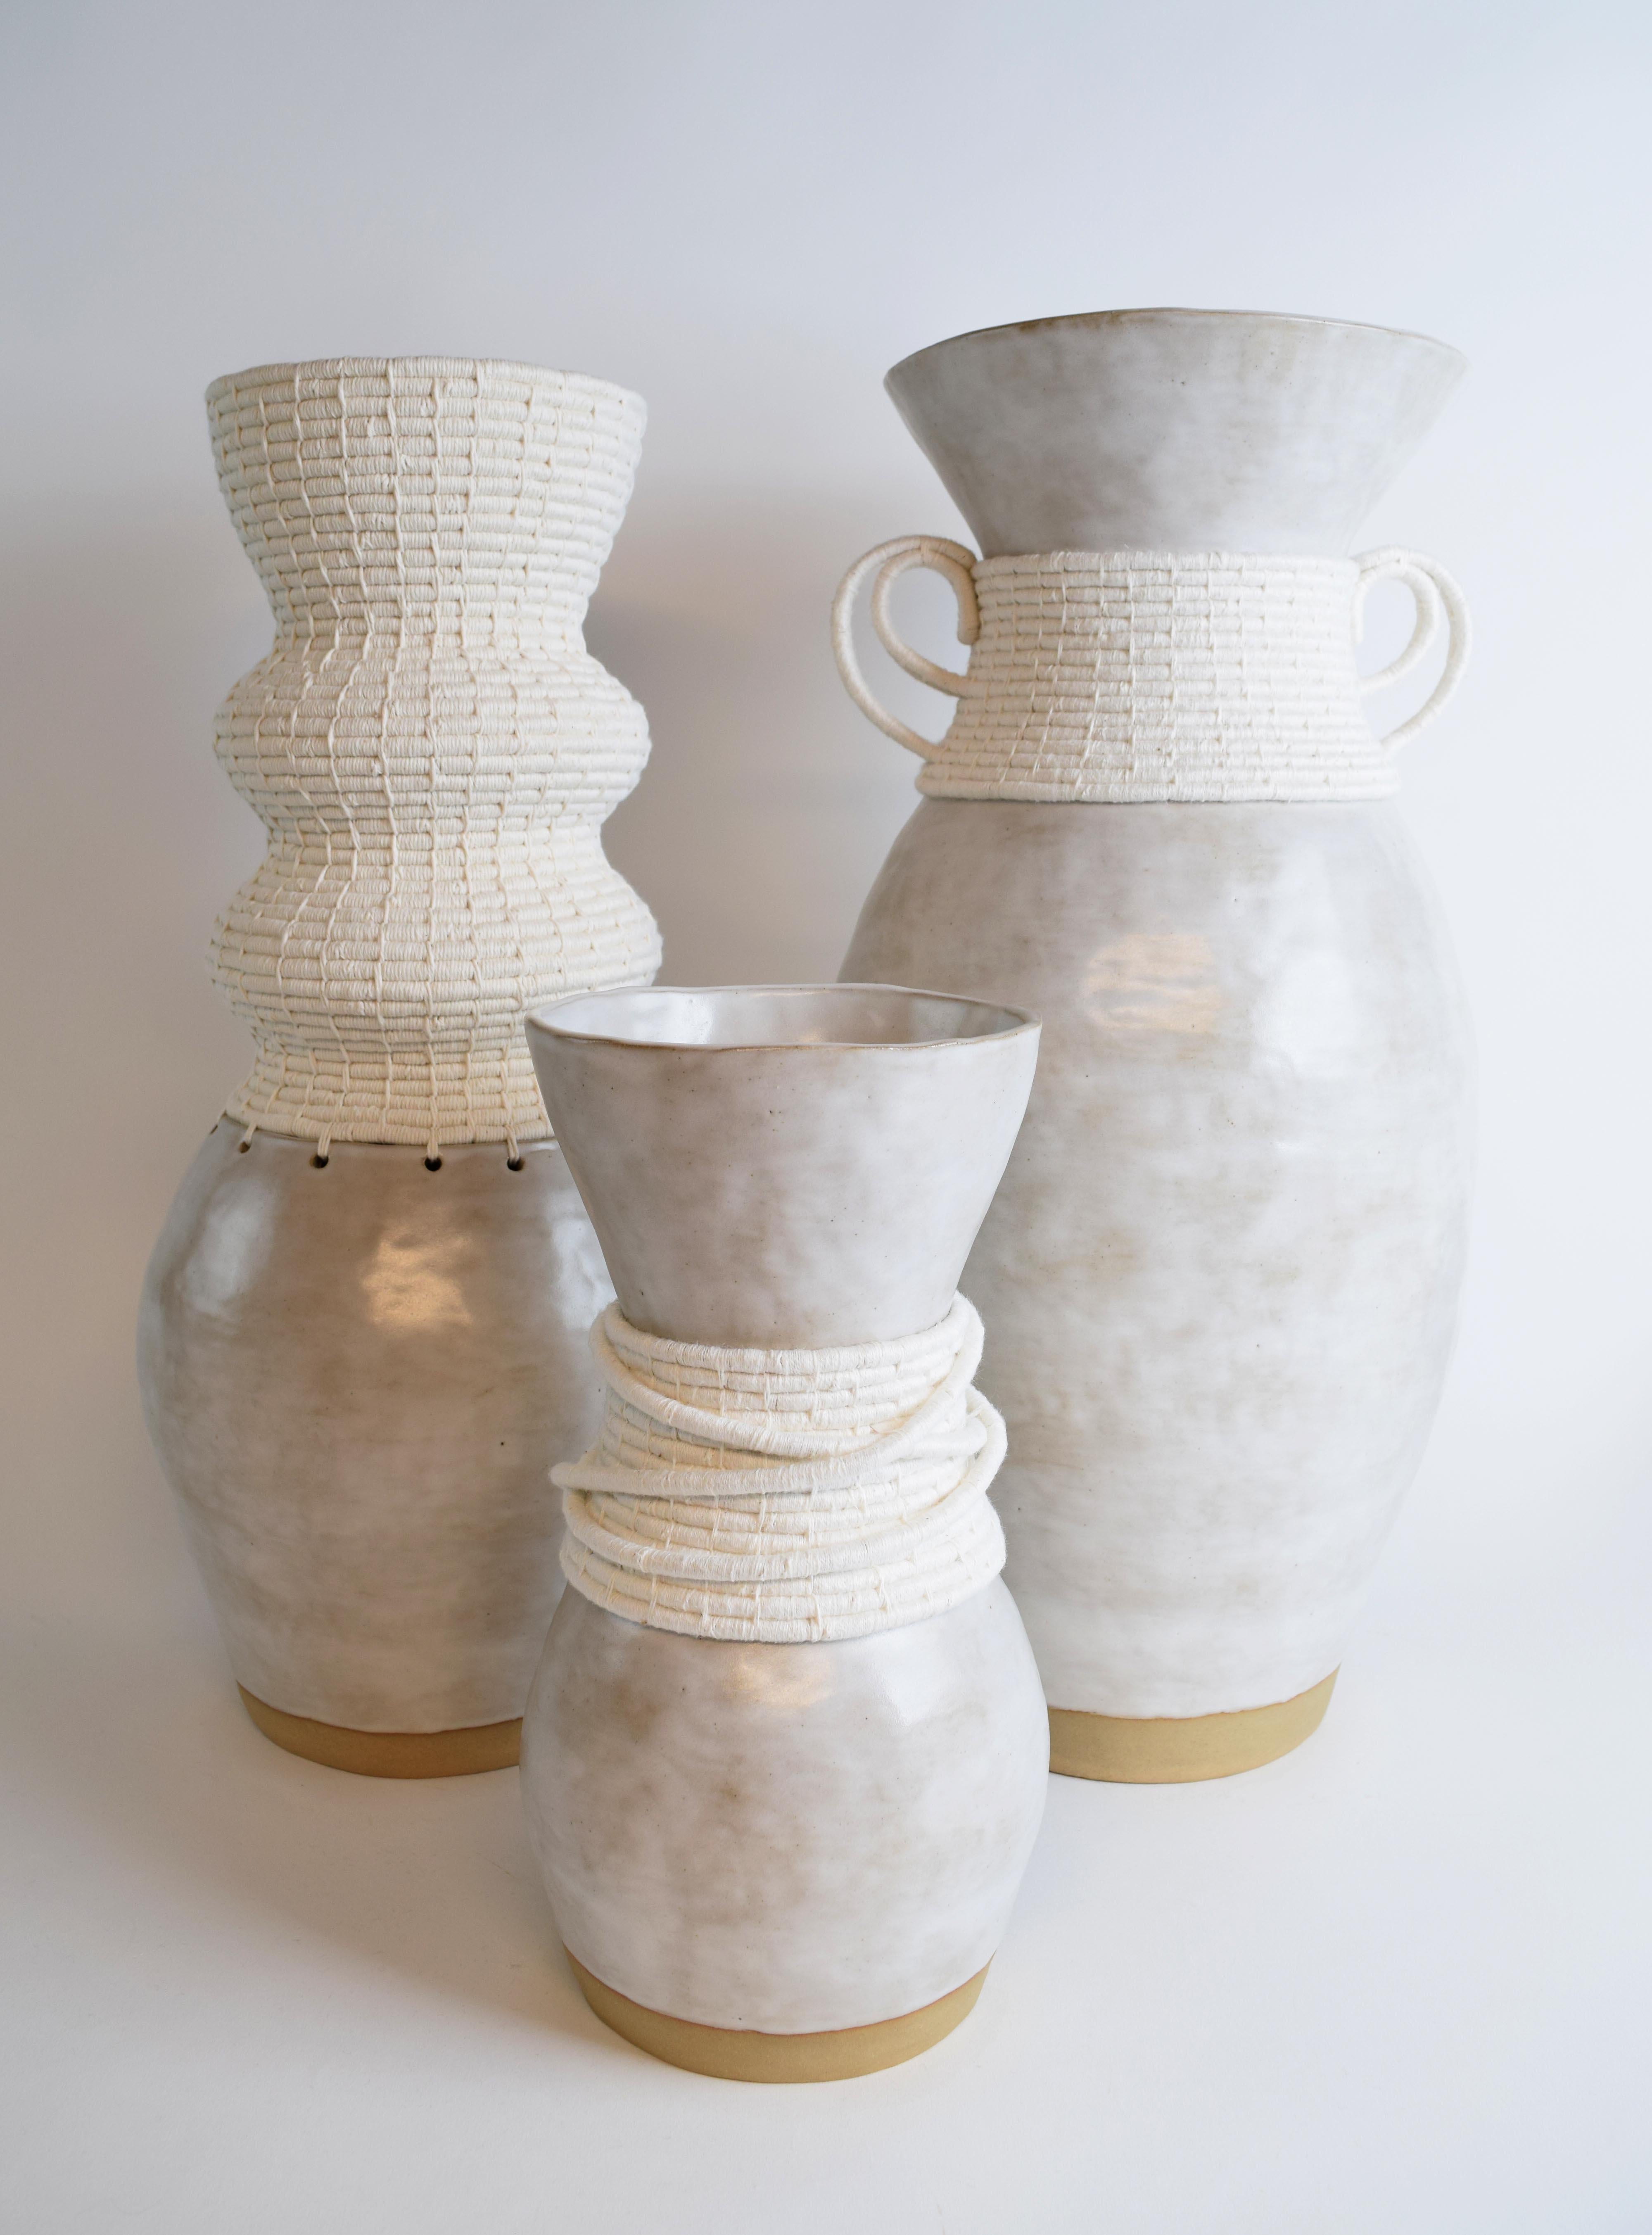 XXIe siècle et contemporain Vase unique en son genre en céramique et fibres n° 809  - glaçure blanche avec coton blanc tissé en vente